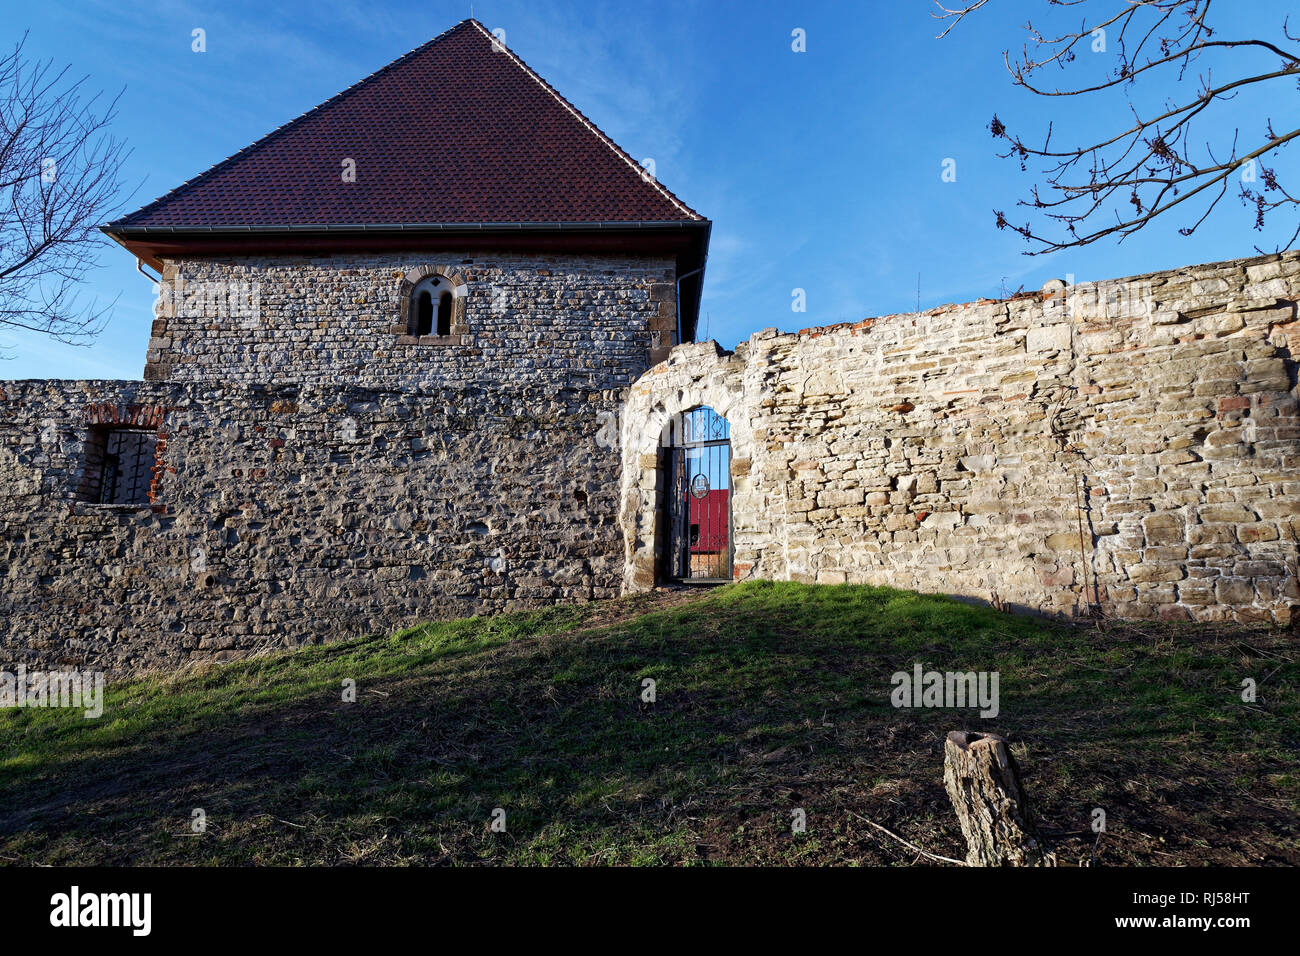 Romanisches Fenster im Kloster Posa bei Zeitz, Sachsen-Anhalt, Deutschland Foto Stock